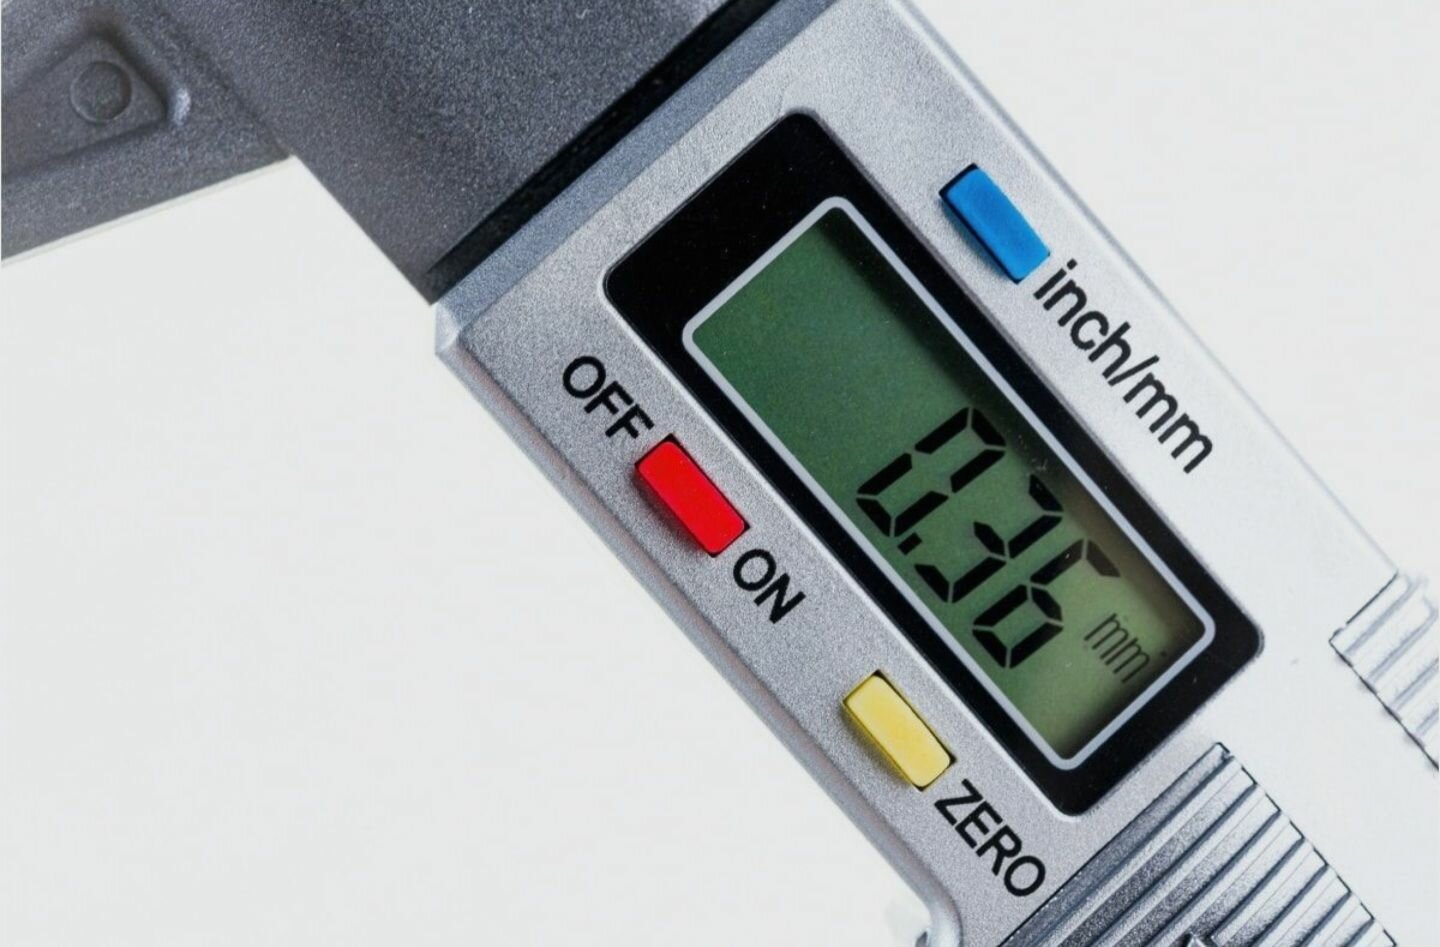 Цифровой измеритель глубины протектора шин автомобиля 0-25.4mm/0.01 мм (Глубиномер)